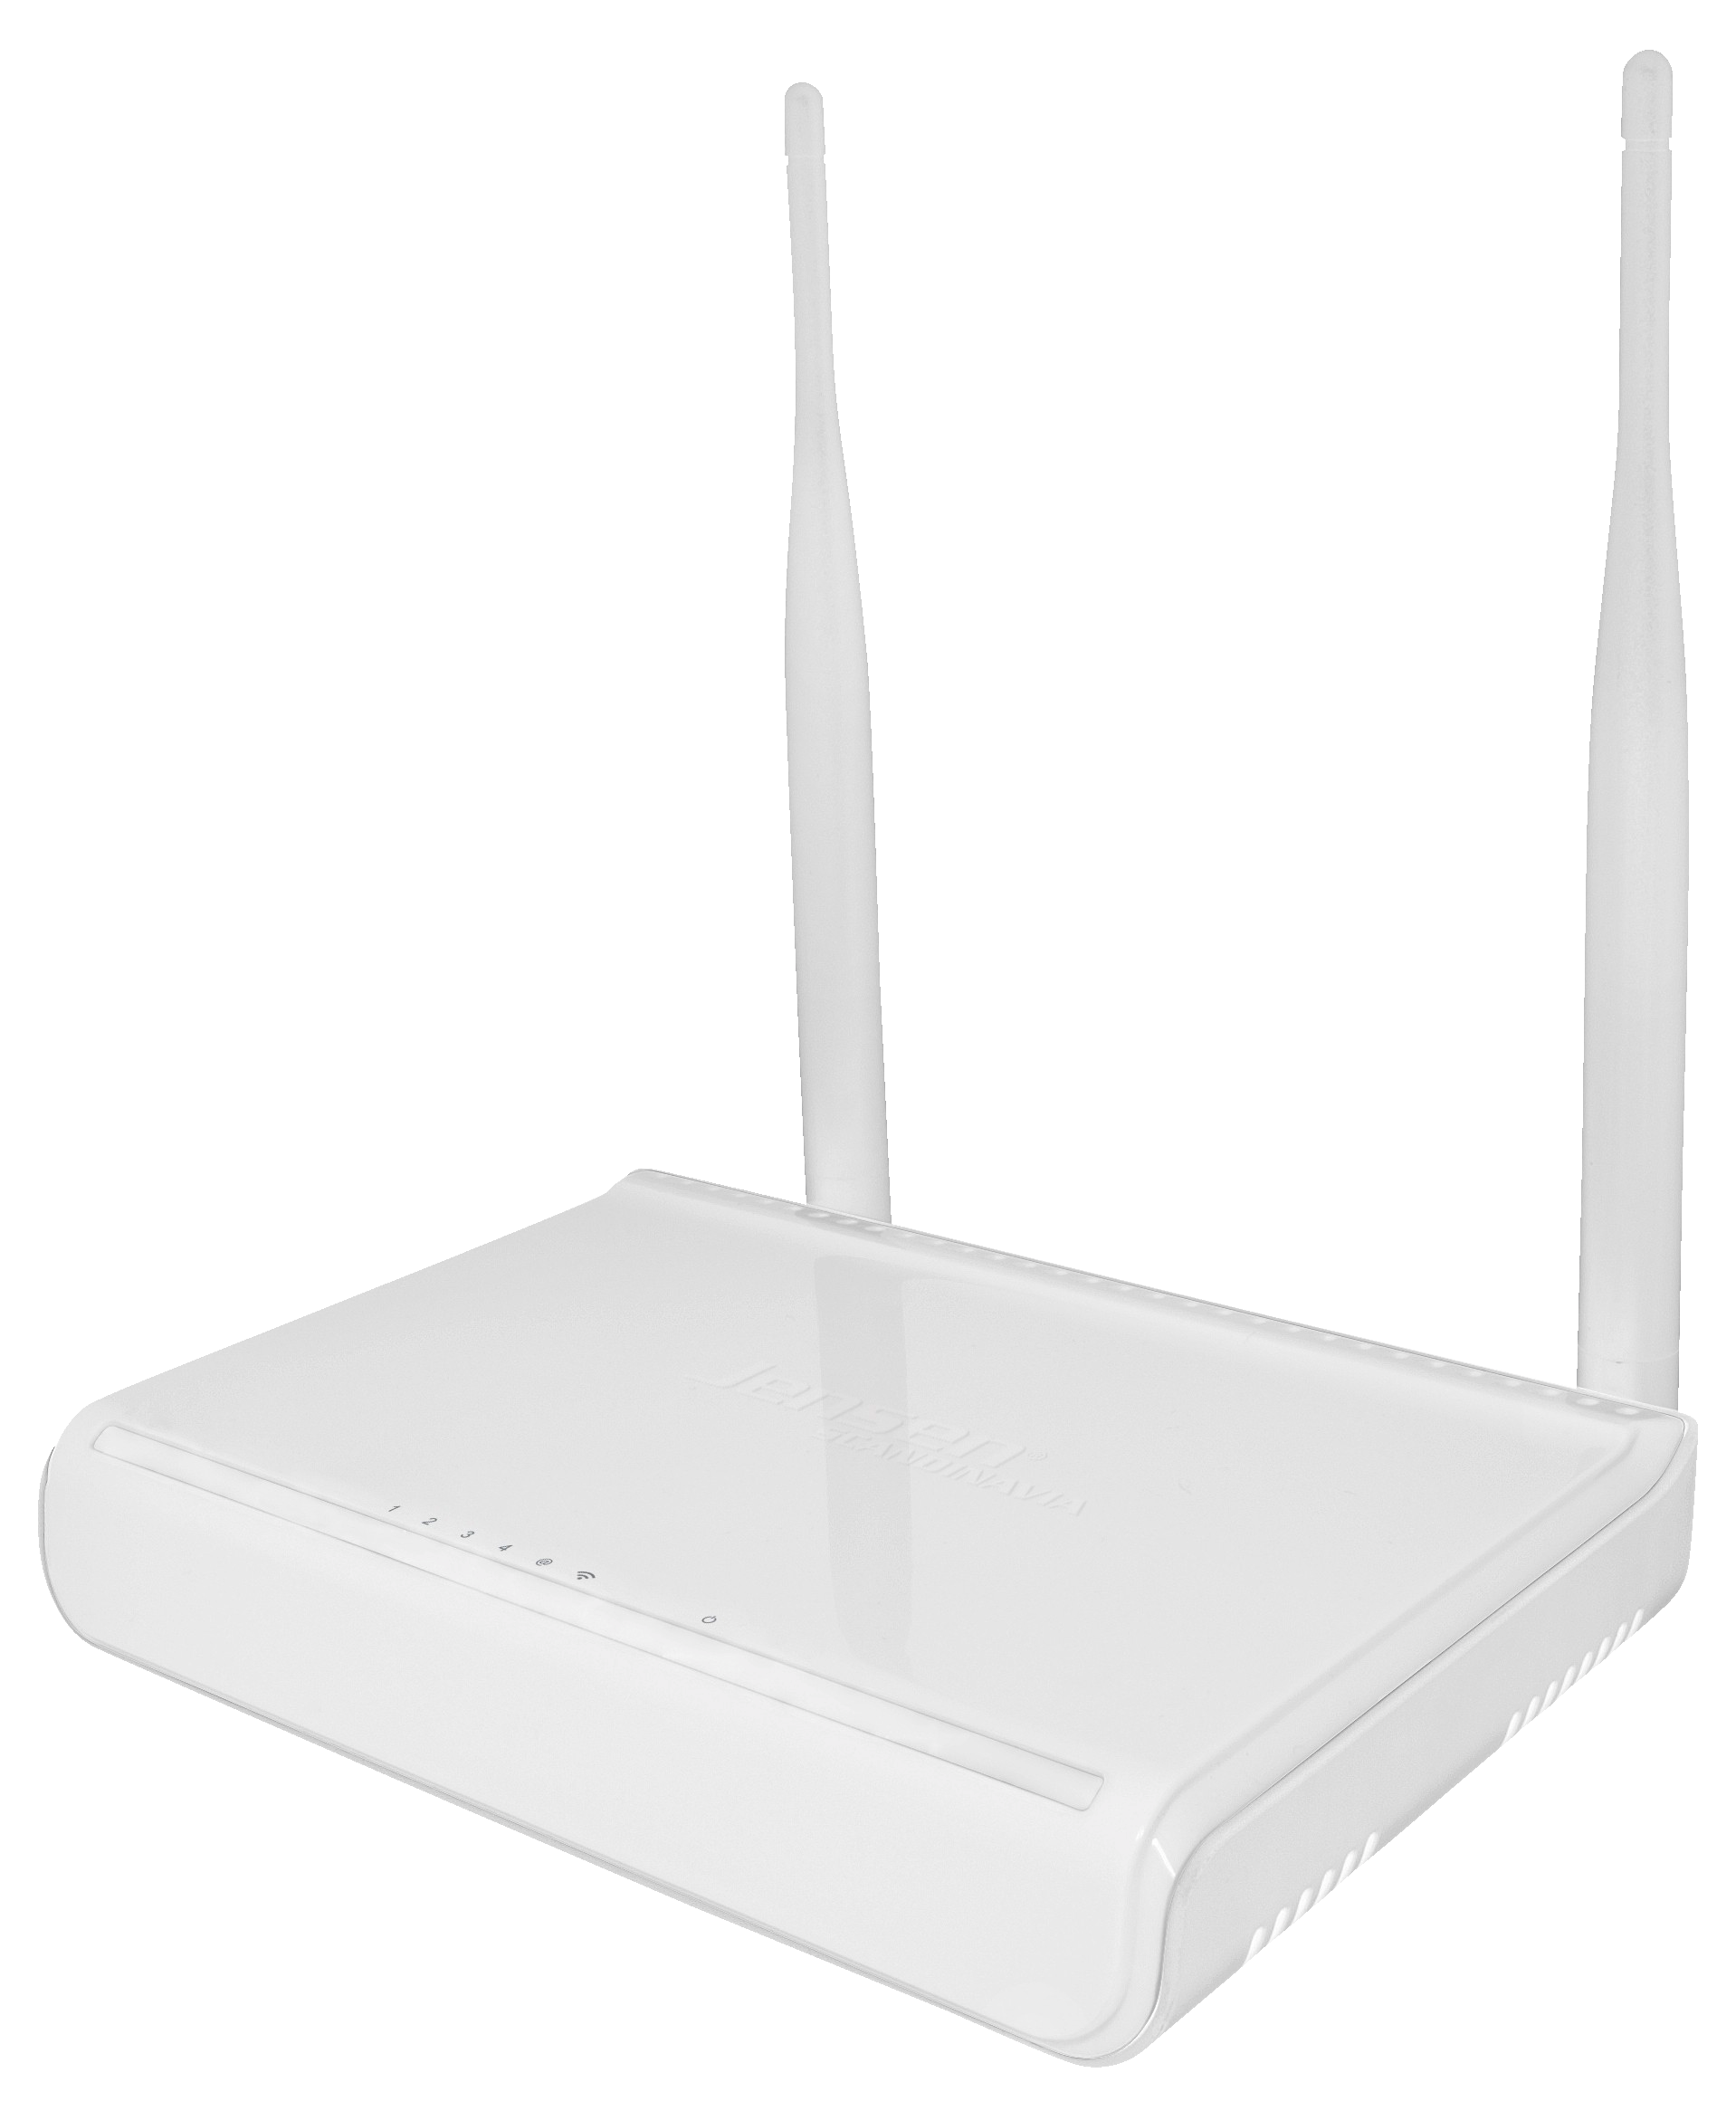 Jensen trådløs router - Nettverk og routere - Elkjøp